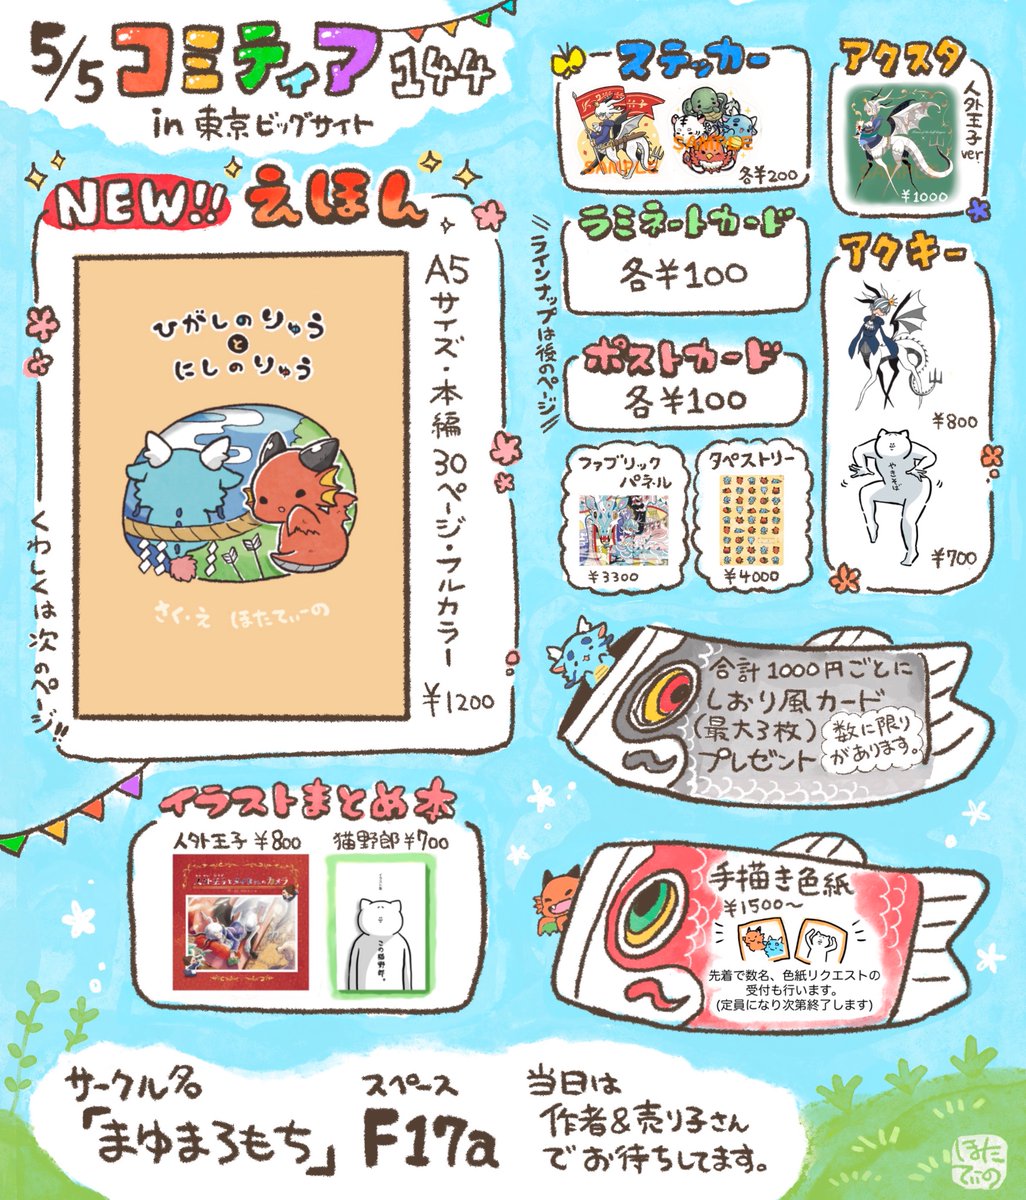 【お知らせ】 〜参加イベント〜 東京ビッグサイト 5/5 「 #コミティア144 」(創作限定)  お品書きができました🐉  今回、10年前に作った「東洋竜さんと西洋竜さん」の出会いのお話をやっと本の形にしました。 当日は私も会場にてお待ちしております。 よろしくお願いいたします。